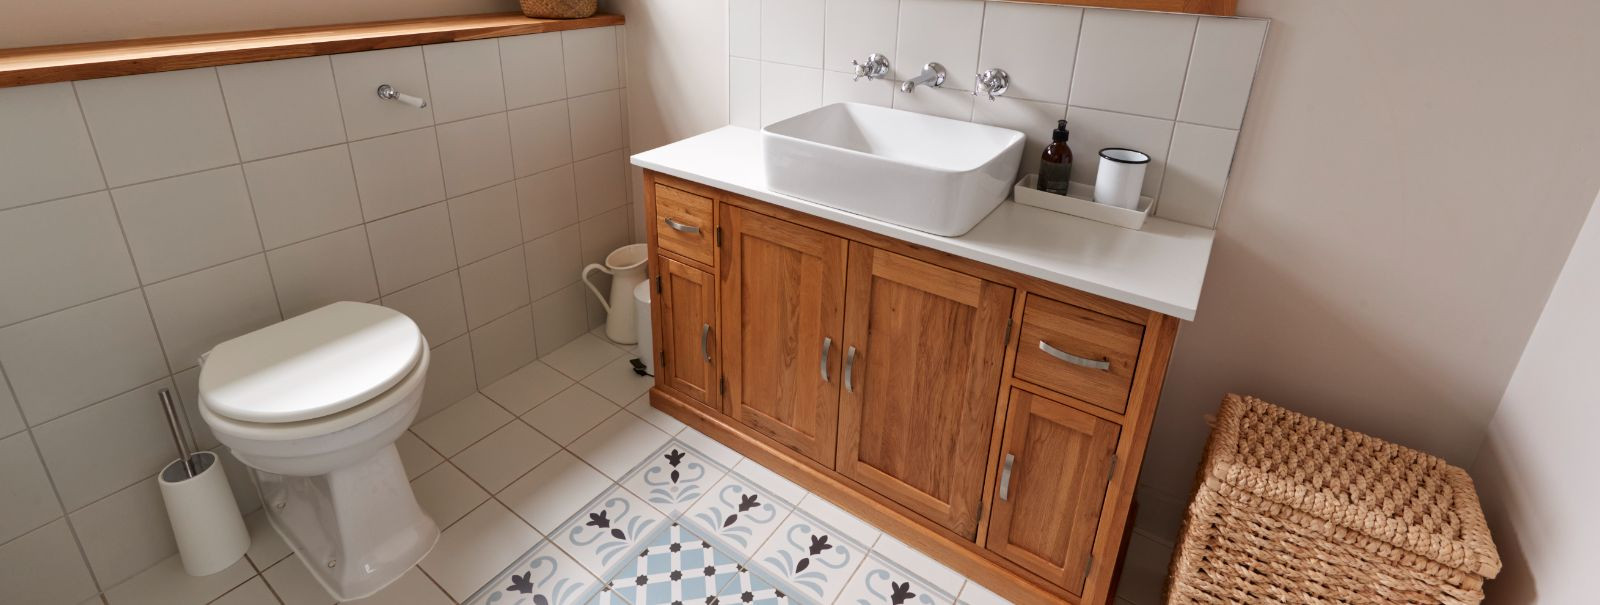 Tõhusad vannitoa paigutused on olulised kaasaegsetes kodudes, kus ruum on piiratud. Hästi kujundatud vannituba võib oluliselt tõsta teie kodu funktsionaalsust j